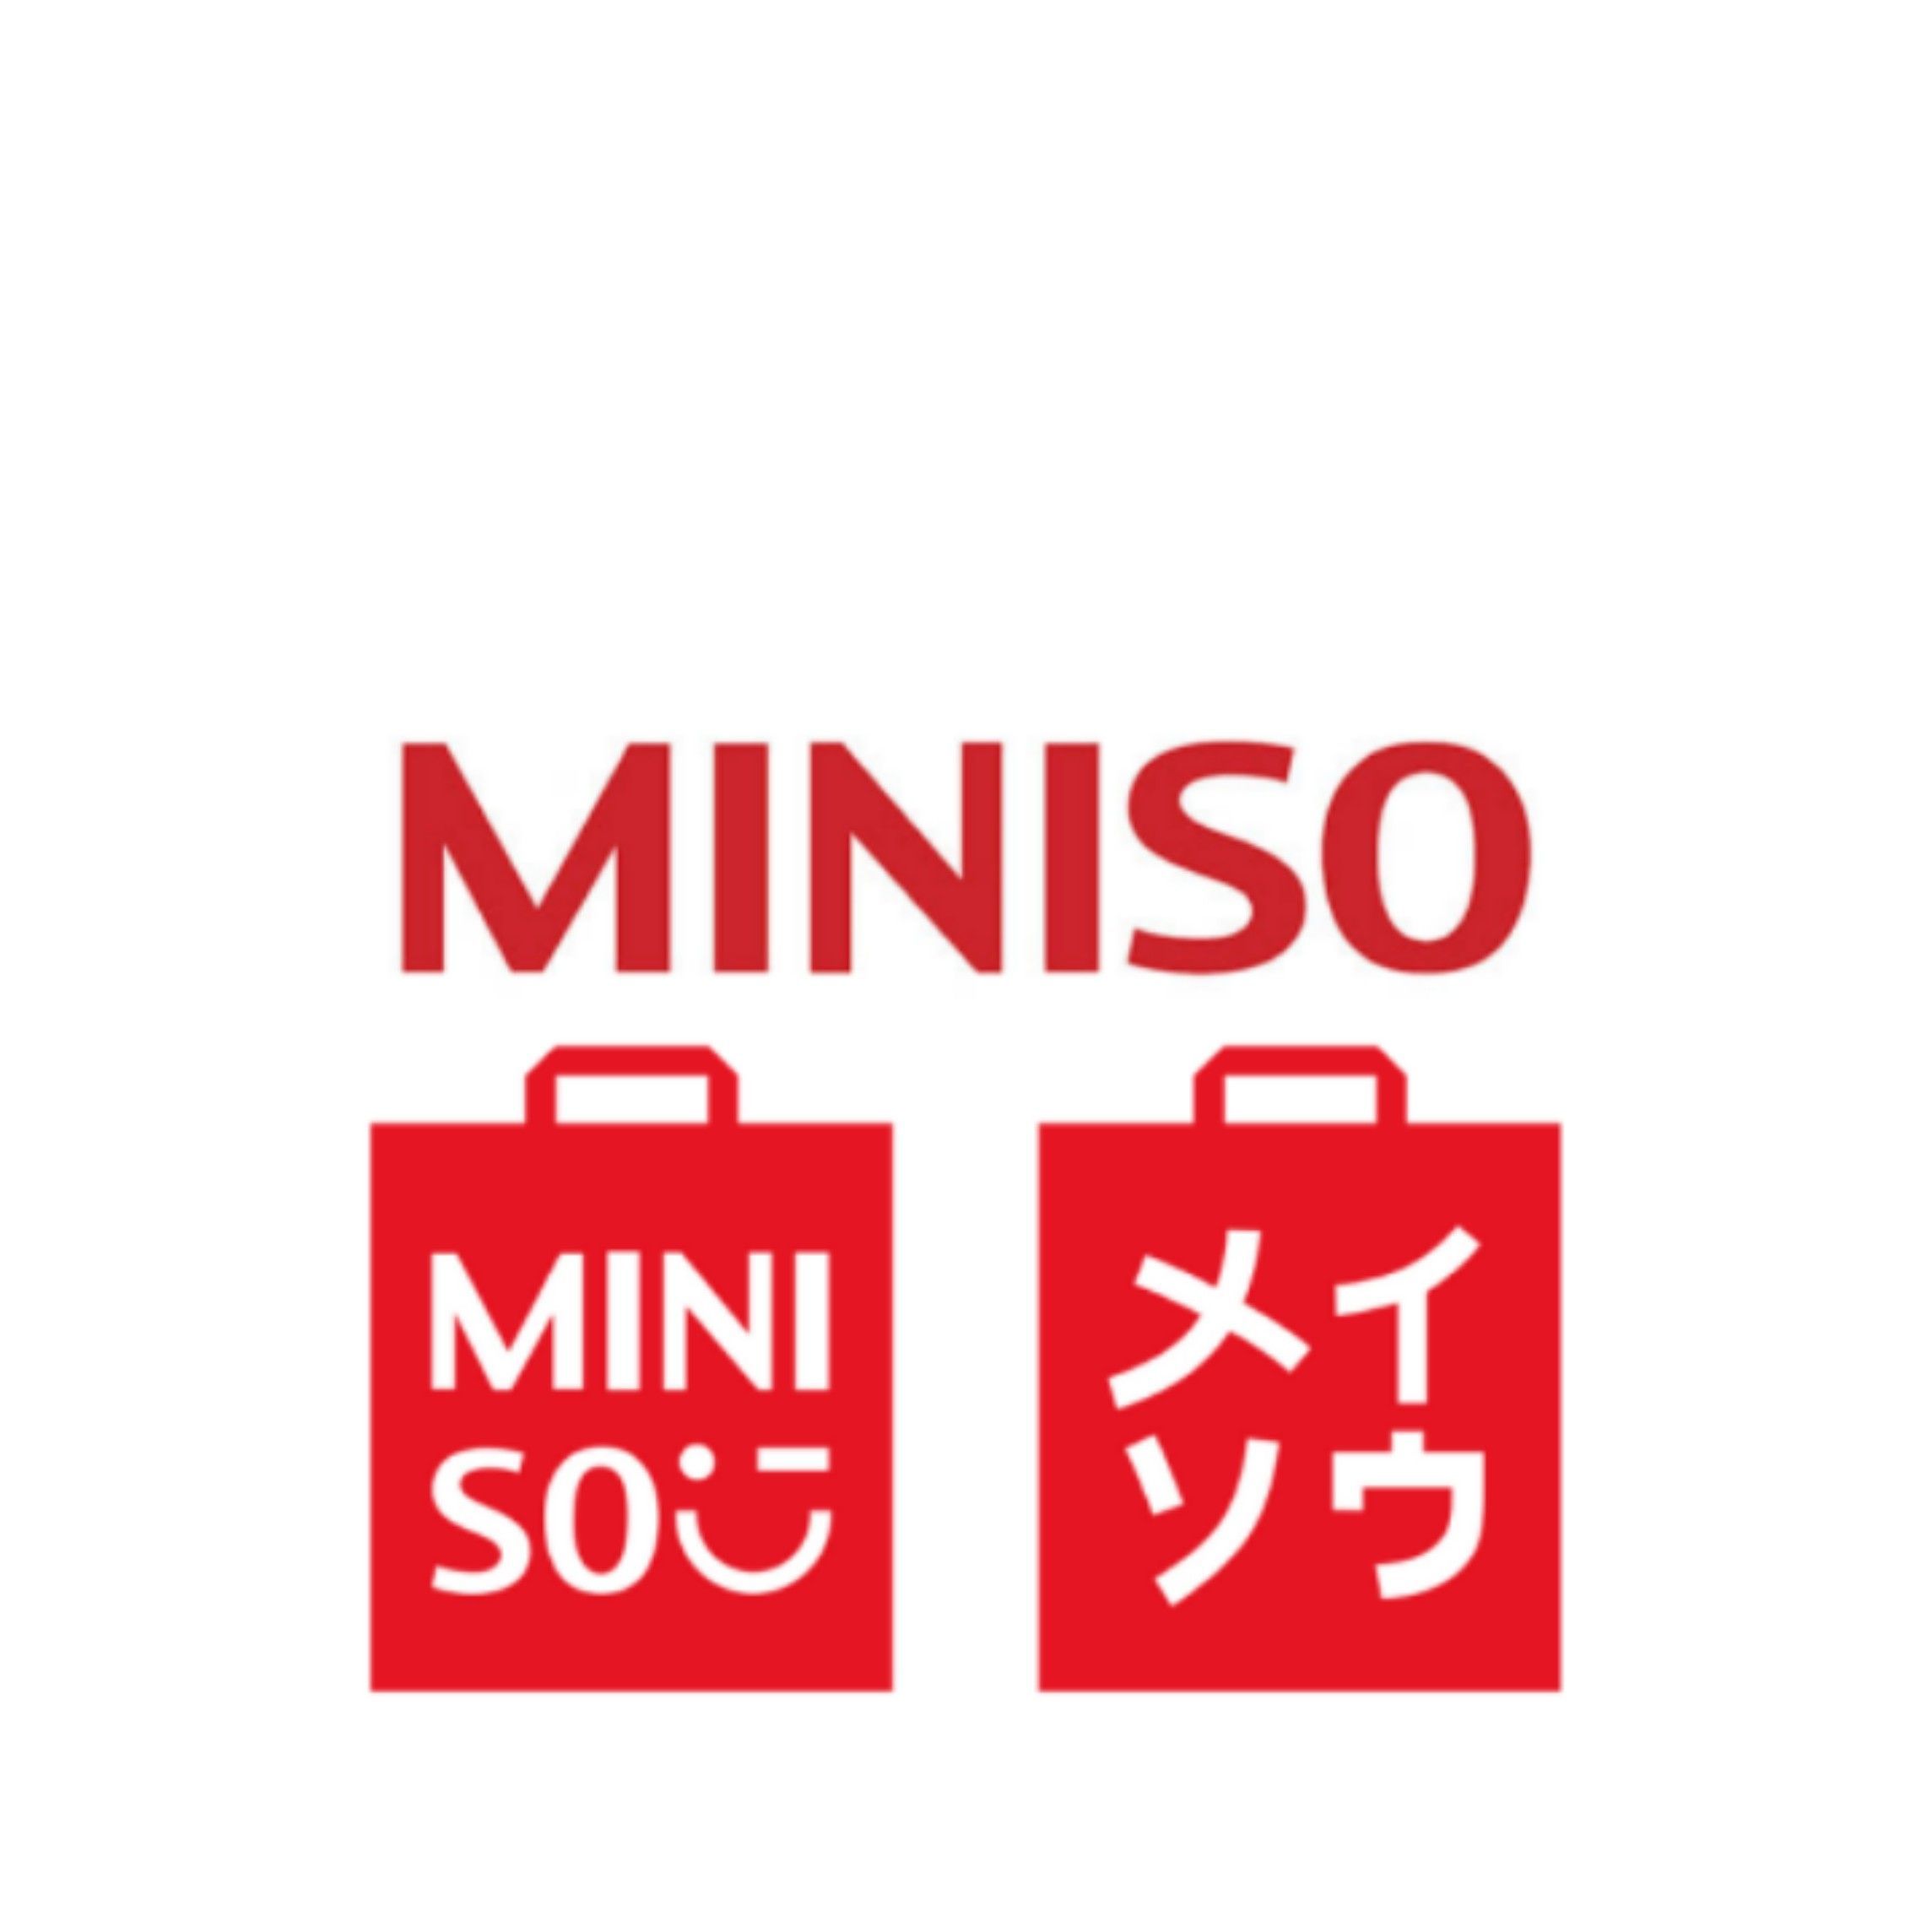 PT Miniso Lifestyle Trading Indonesia buka lowongan kerja